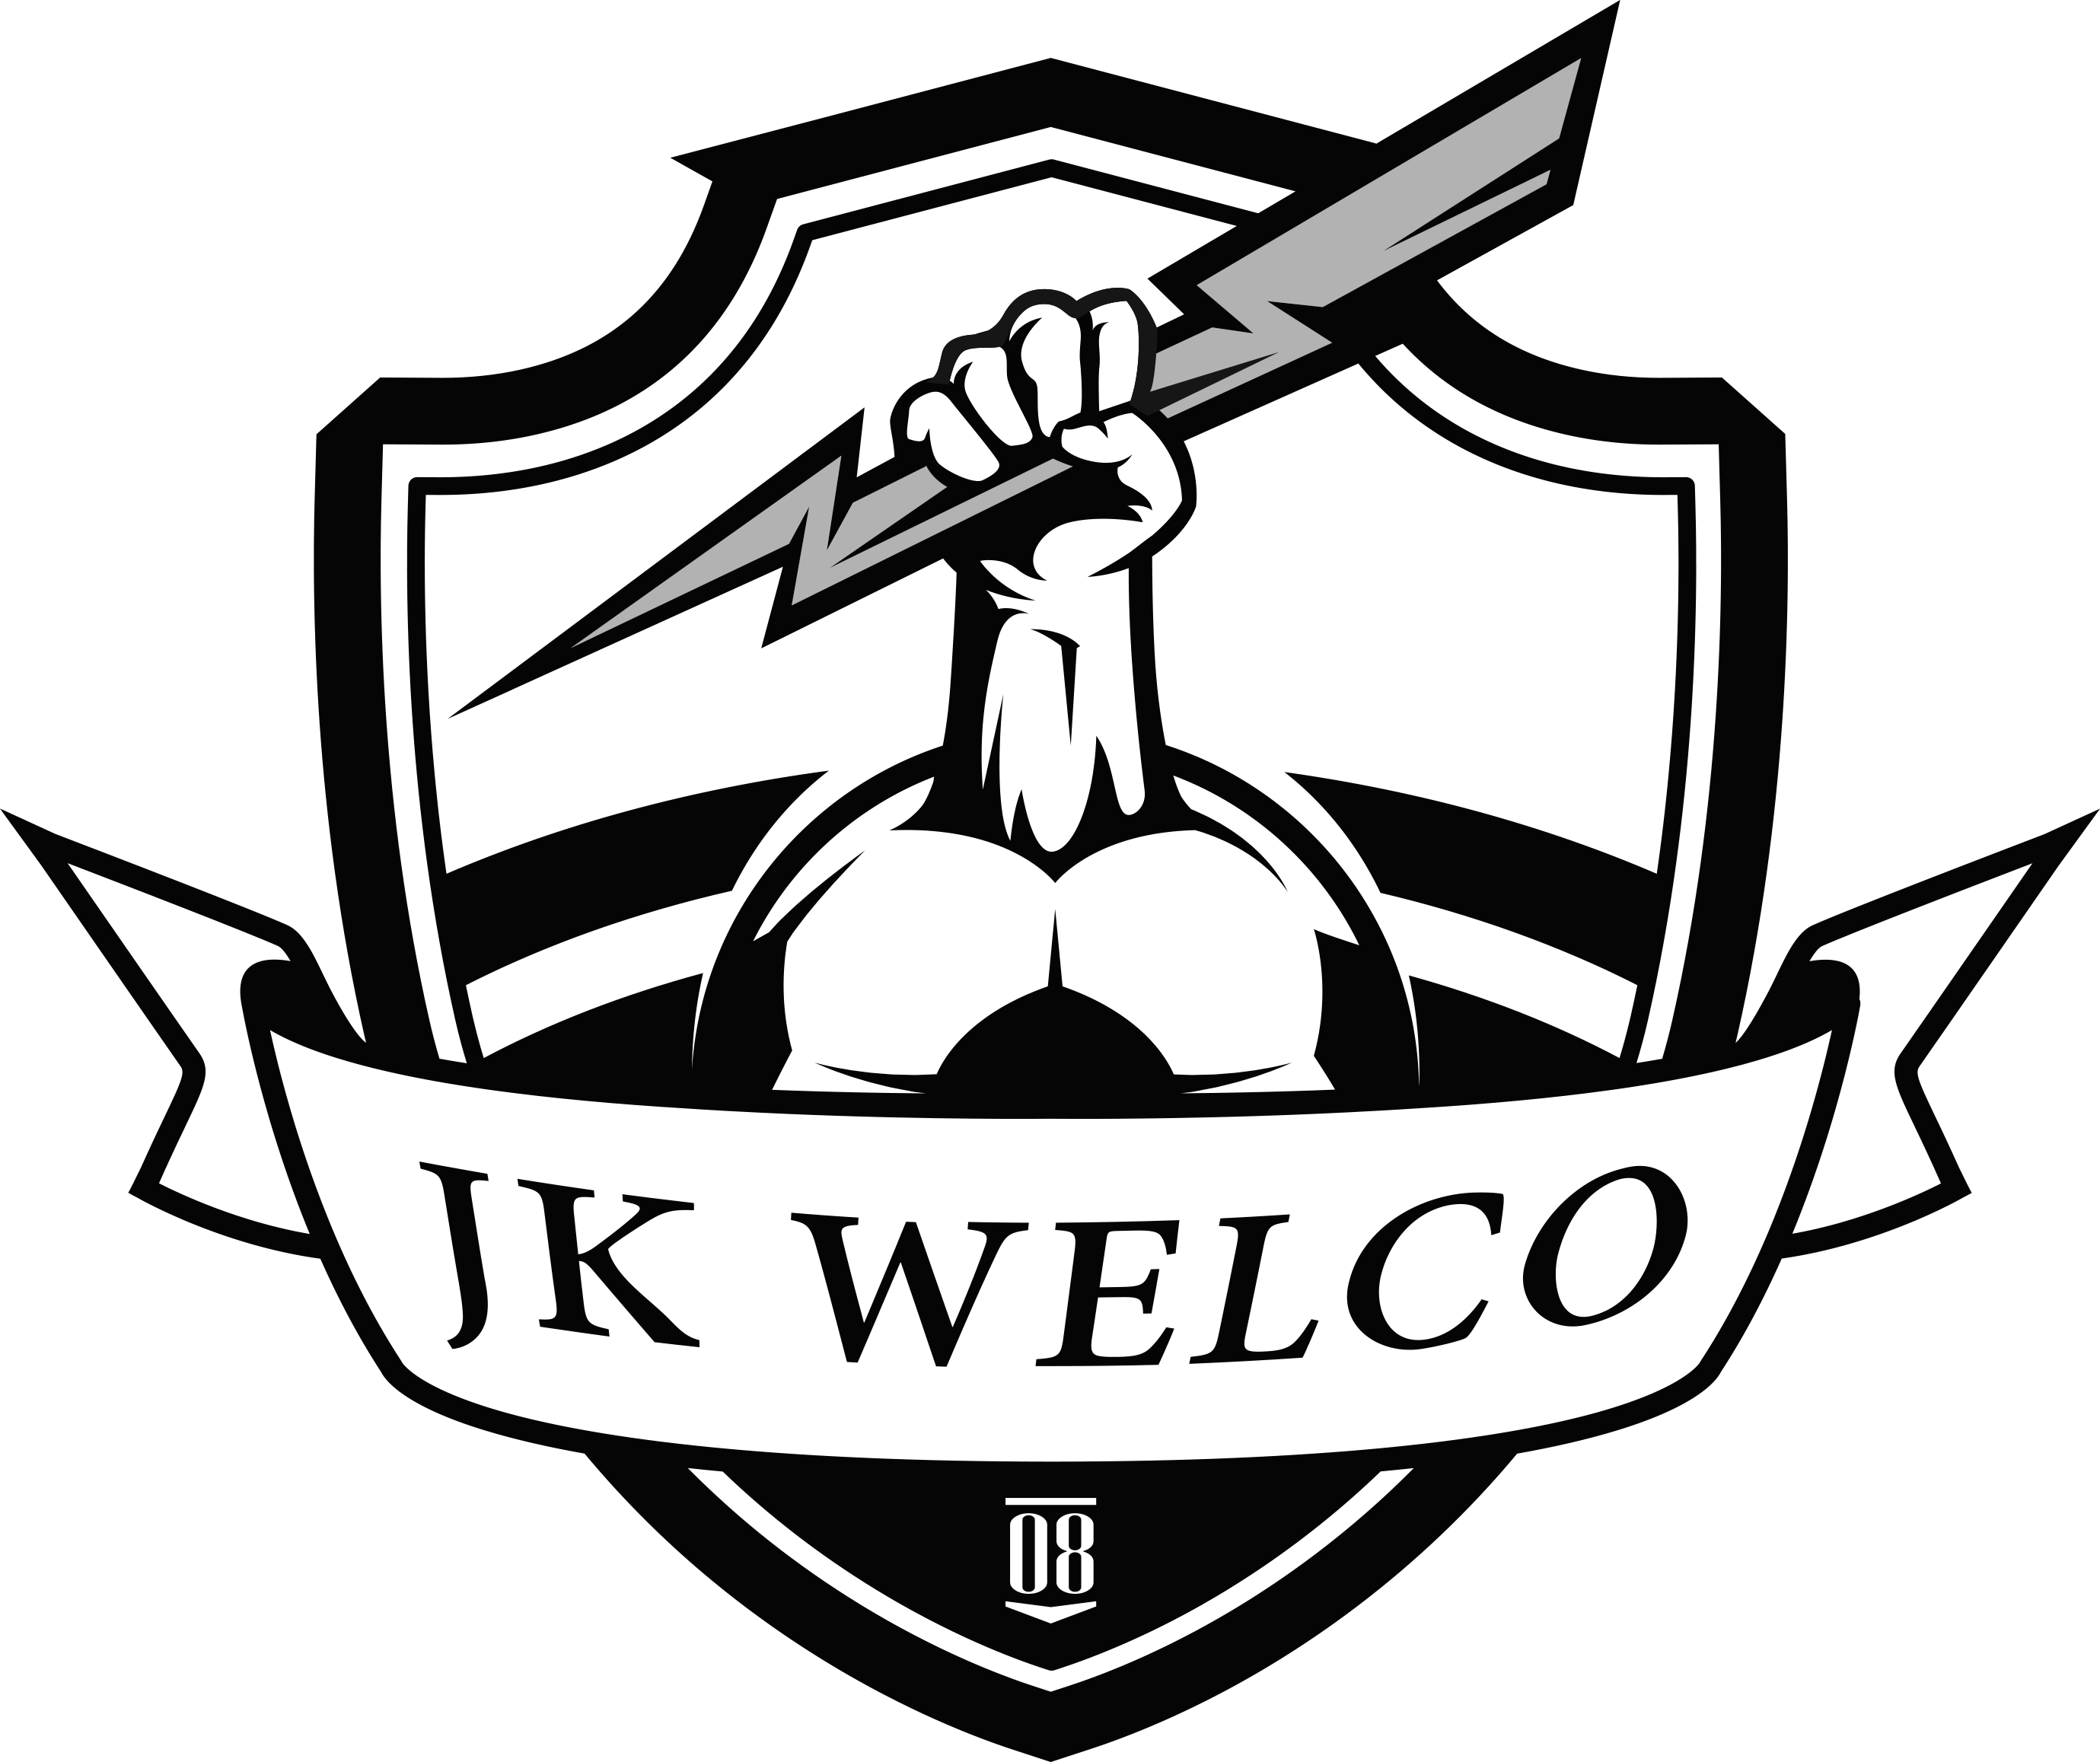 Tartu JK Welco - Logo